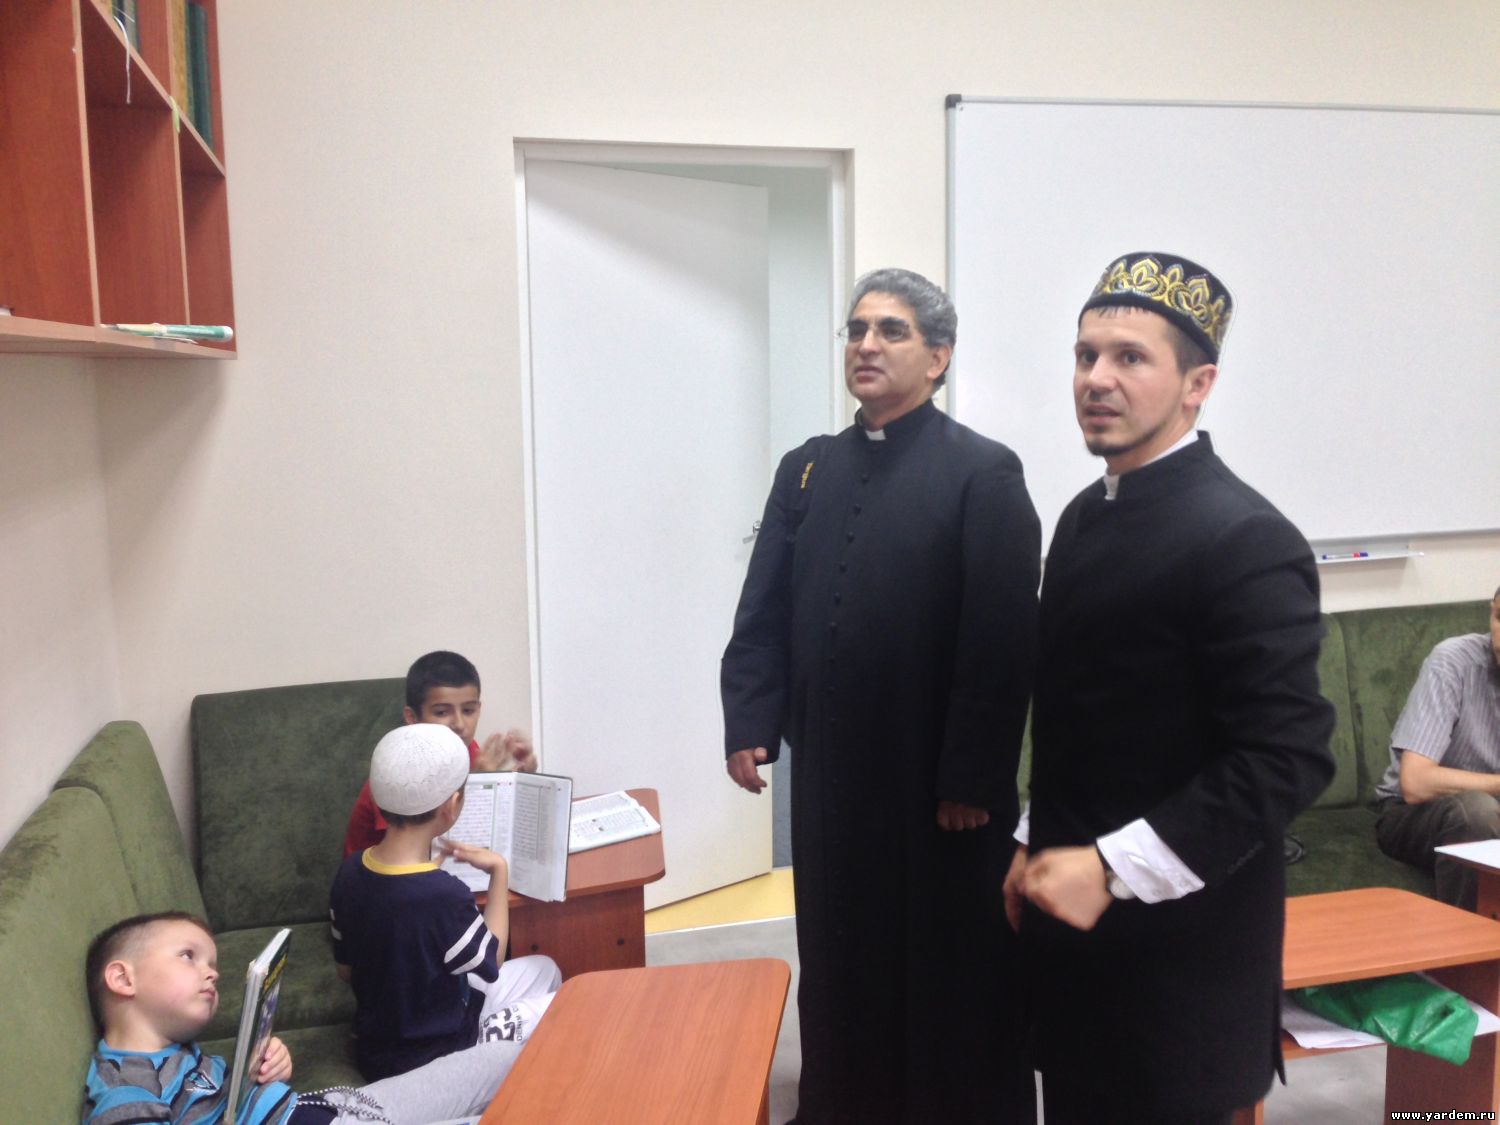 Настоятель католического храма  Диогенез Уркиза посетил мечеть "Ярдэм"